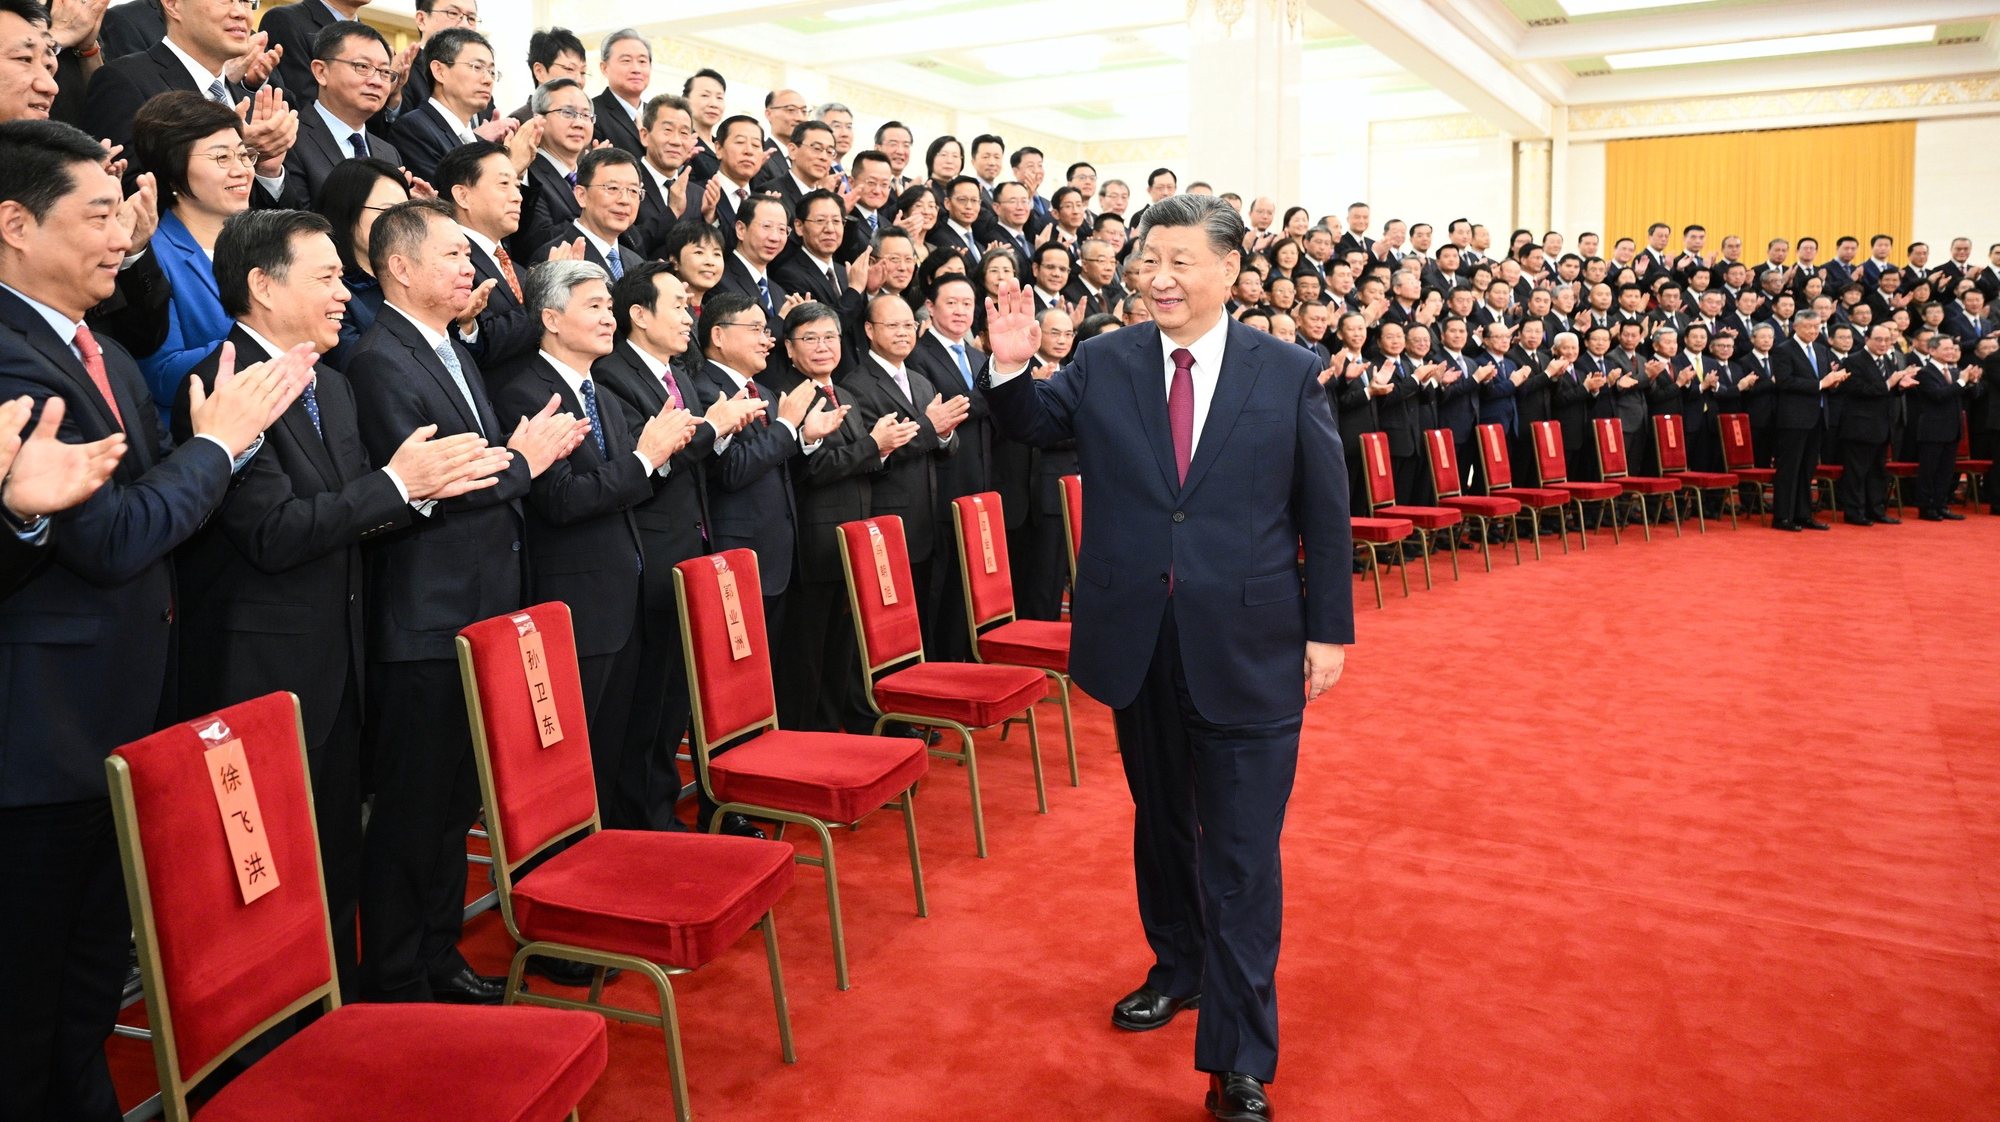 Xi sublinhou a necessidade de direcionar o Departamento de Trabalho da Frente Unida do Comité Central do Partido Comunista Chinês